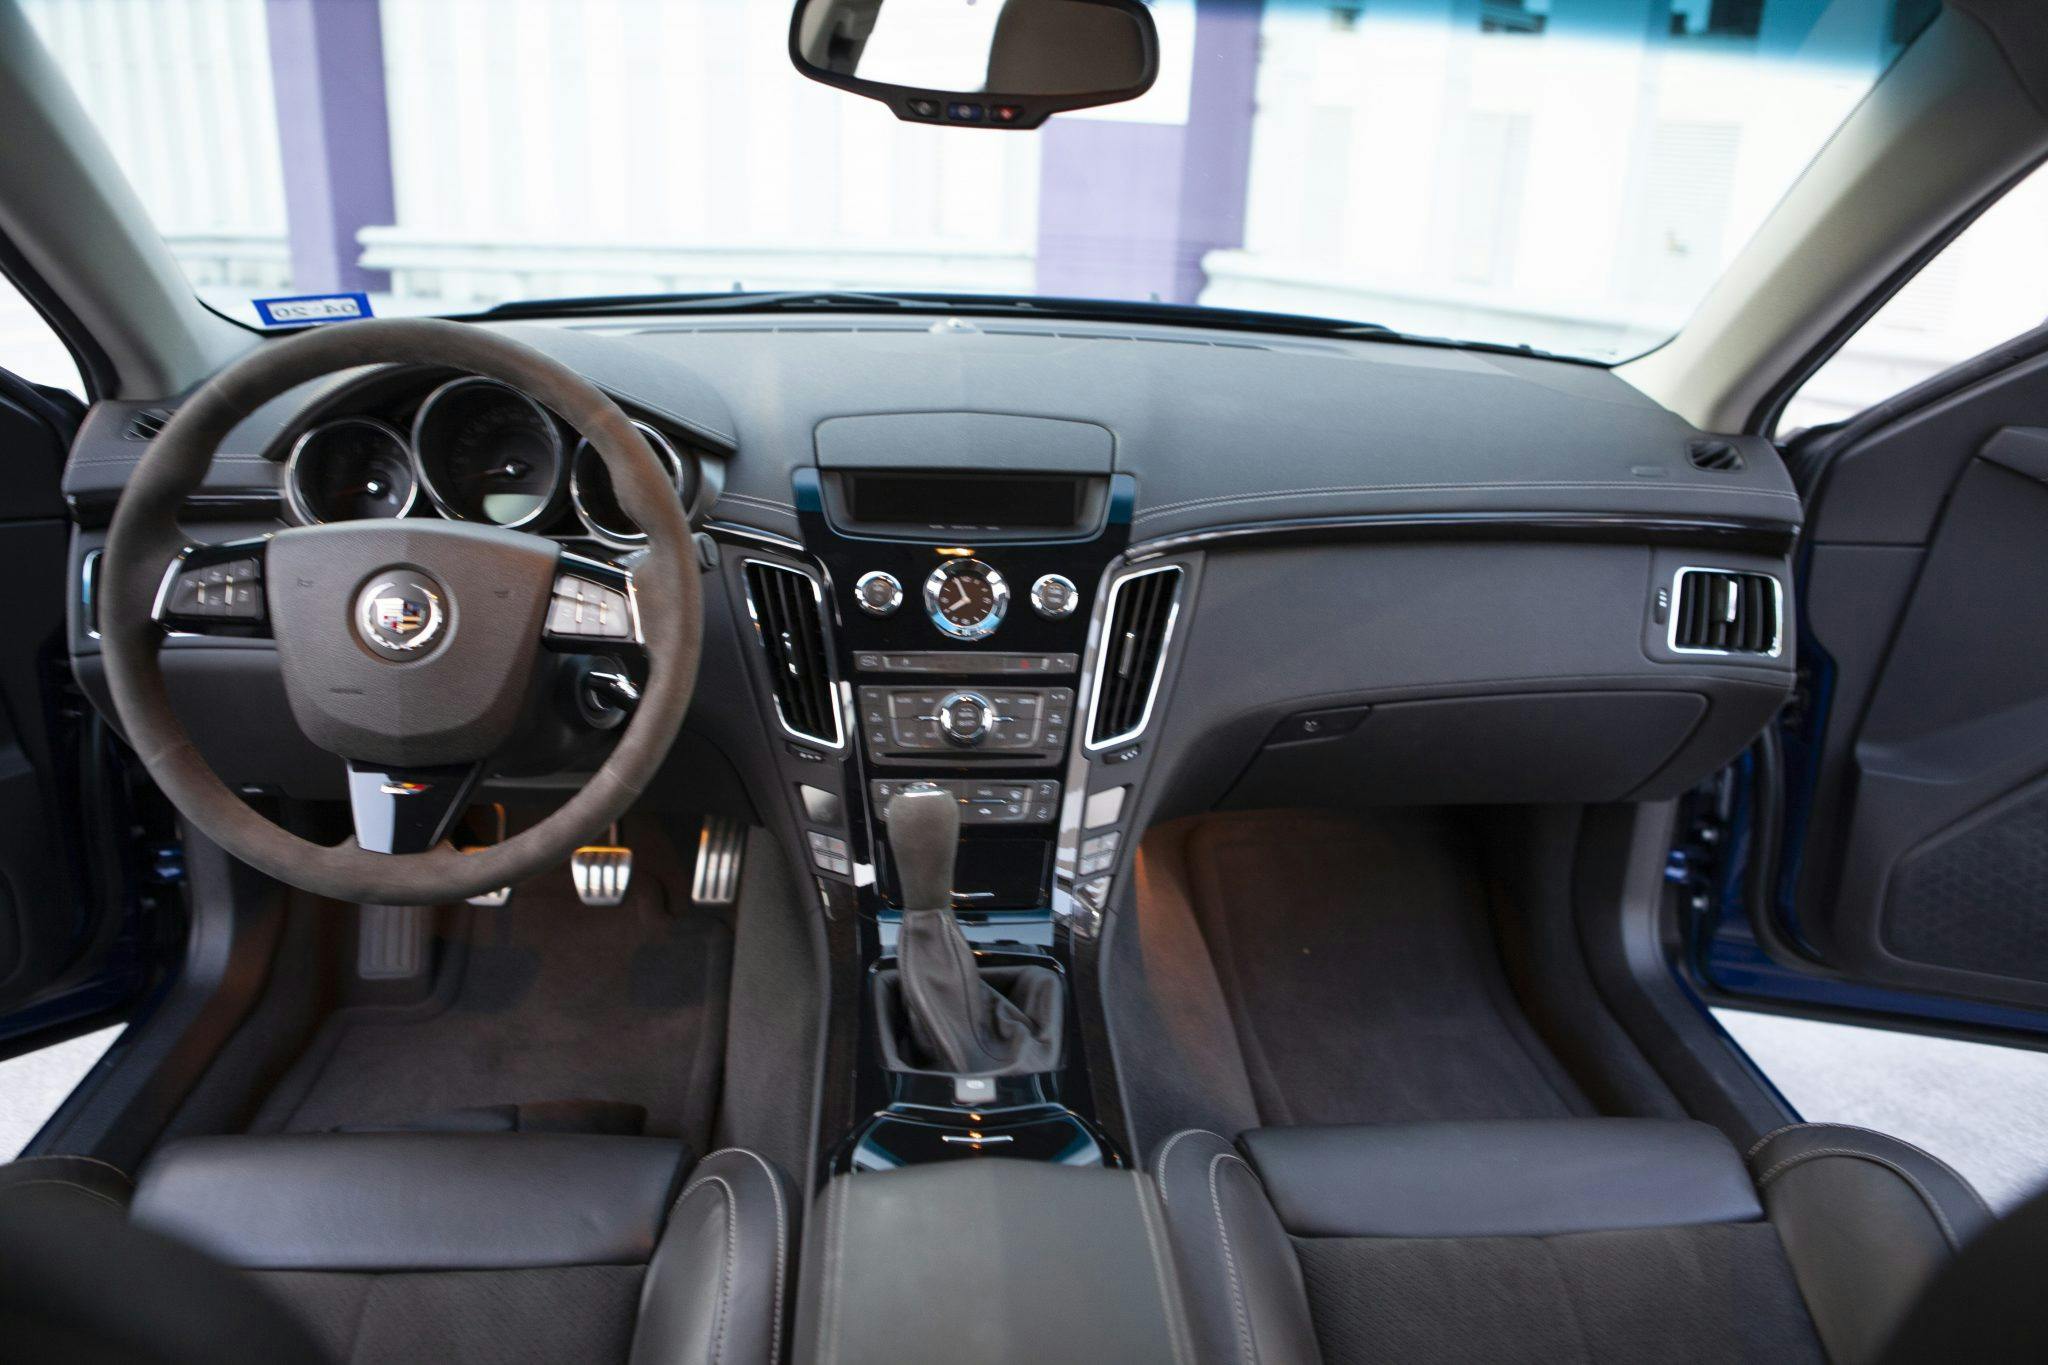 2012 Cadillac CTS-V Wagon interior front